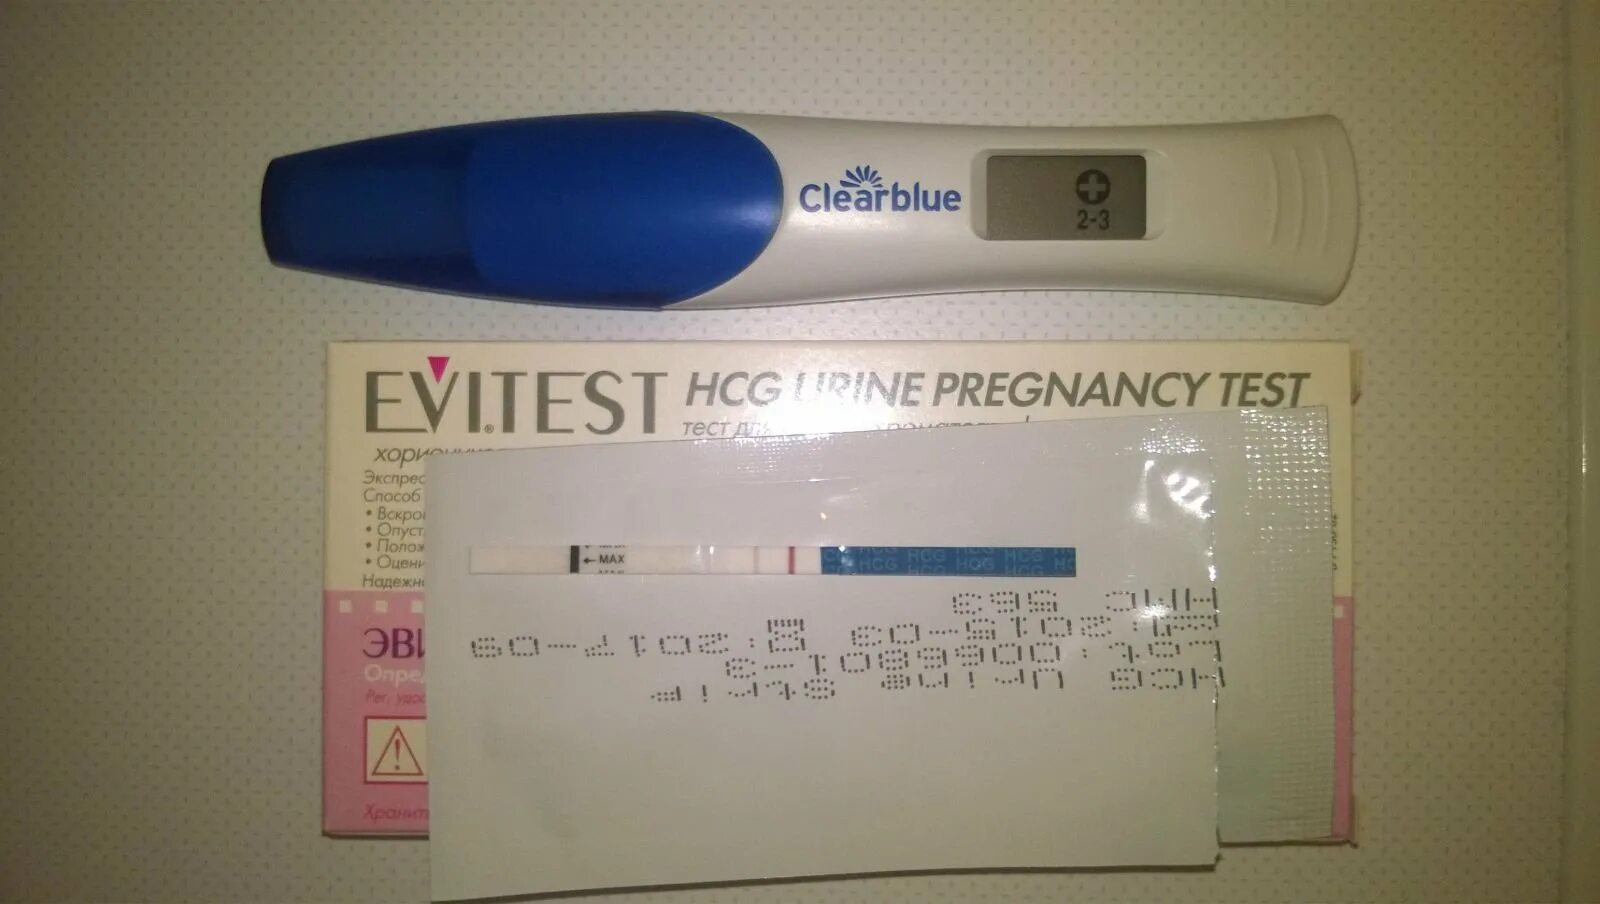 4 неделя беременности тест покажет. 2 Недели беременности тест покажет. Тест на беременность 1-2 недели. Clearblue 3+. Электронный тест на беременность 7 недель.